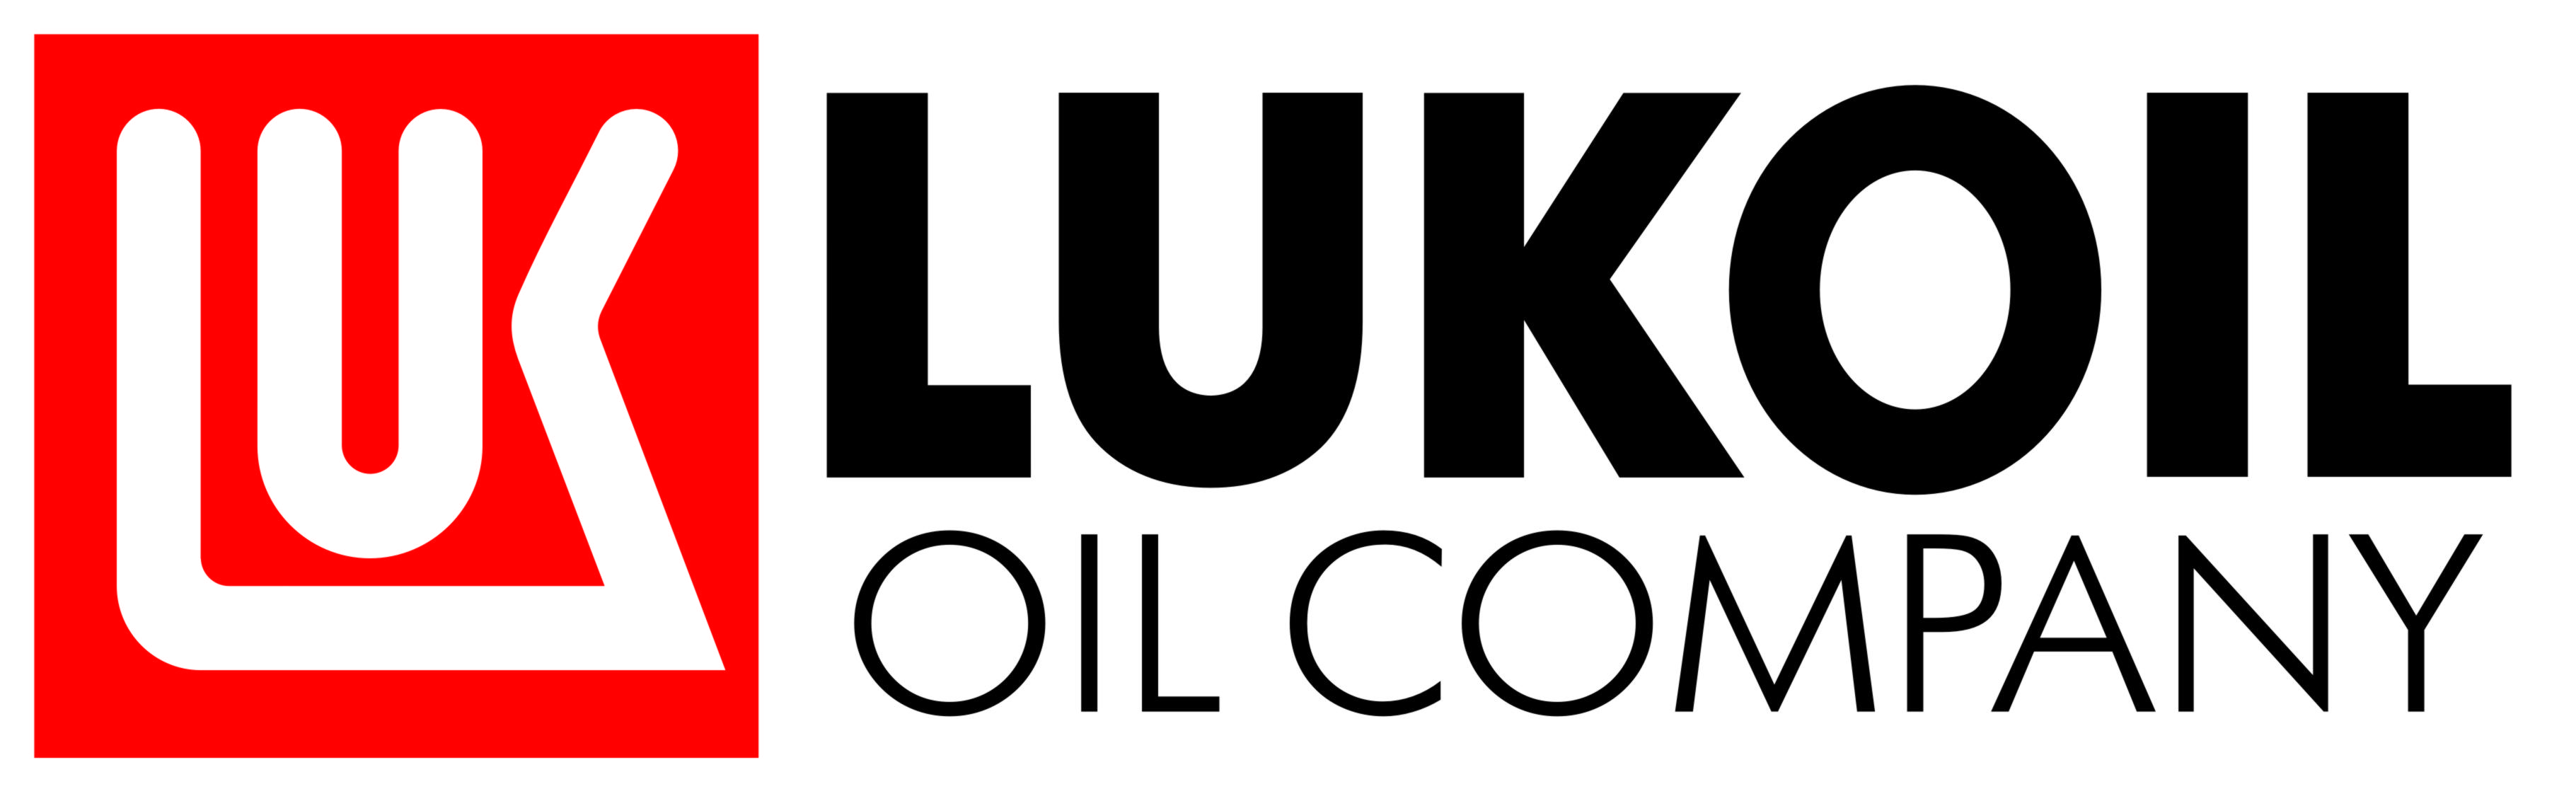 Lukoil Logo Wallpaper